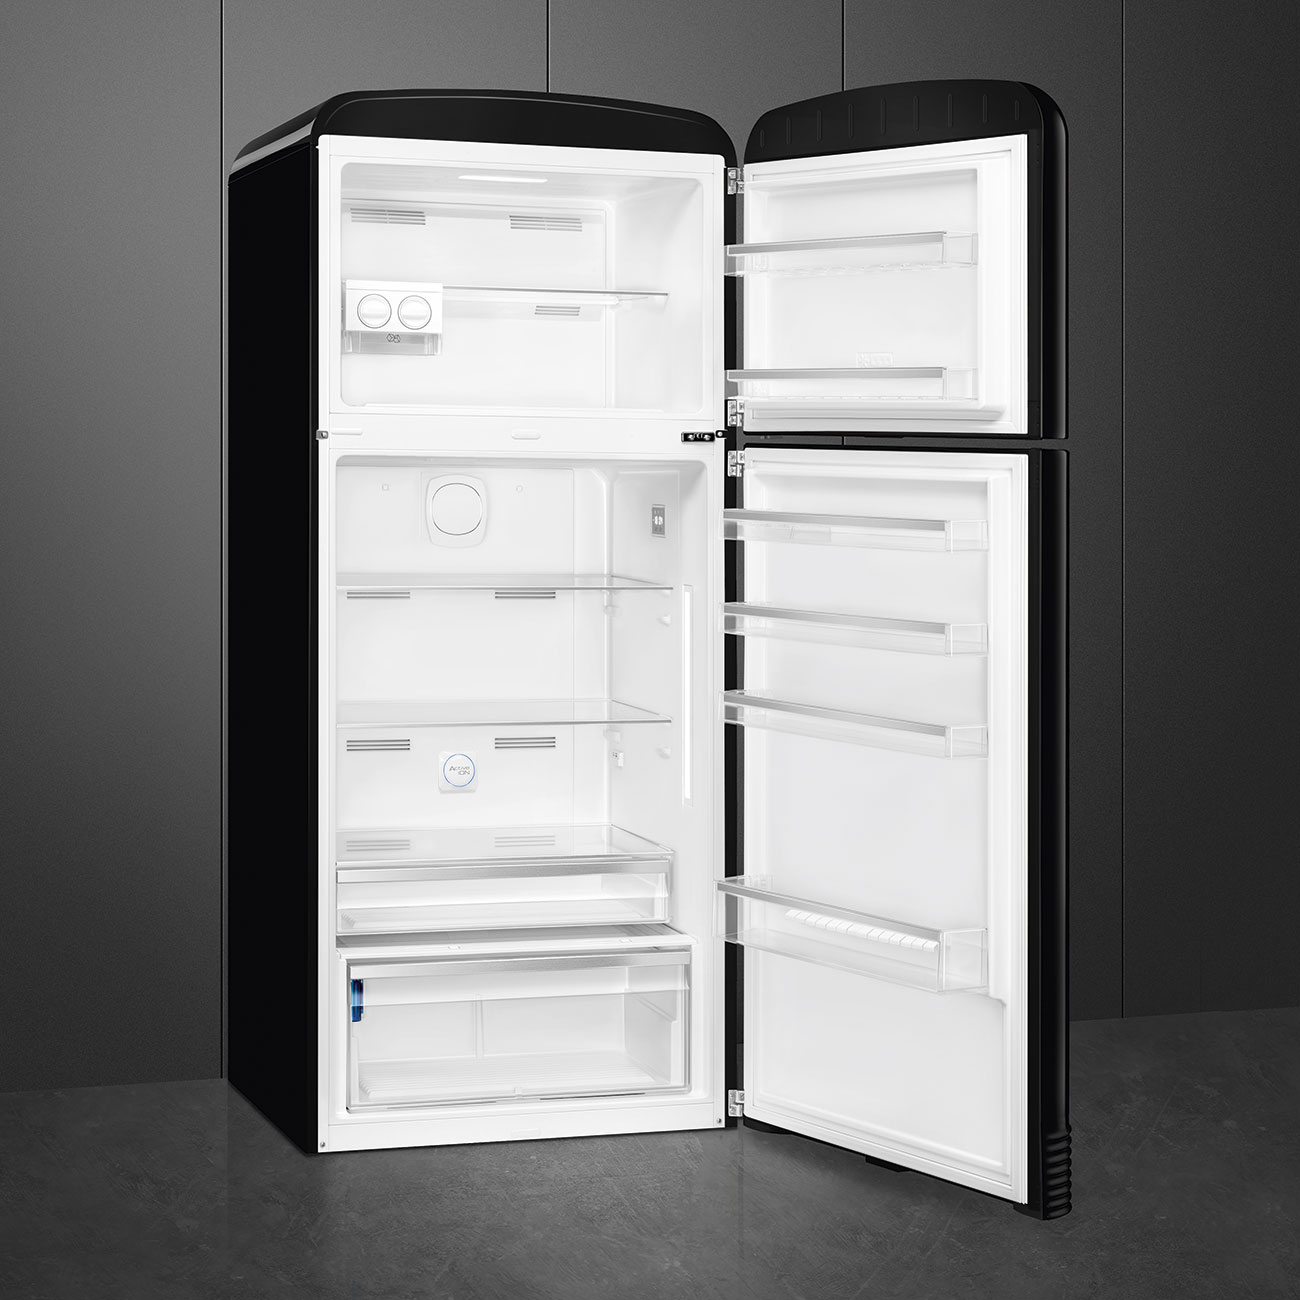 Black refrigerator - Smeg_5